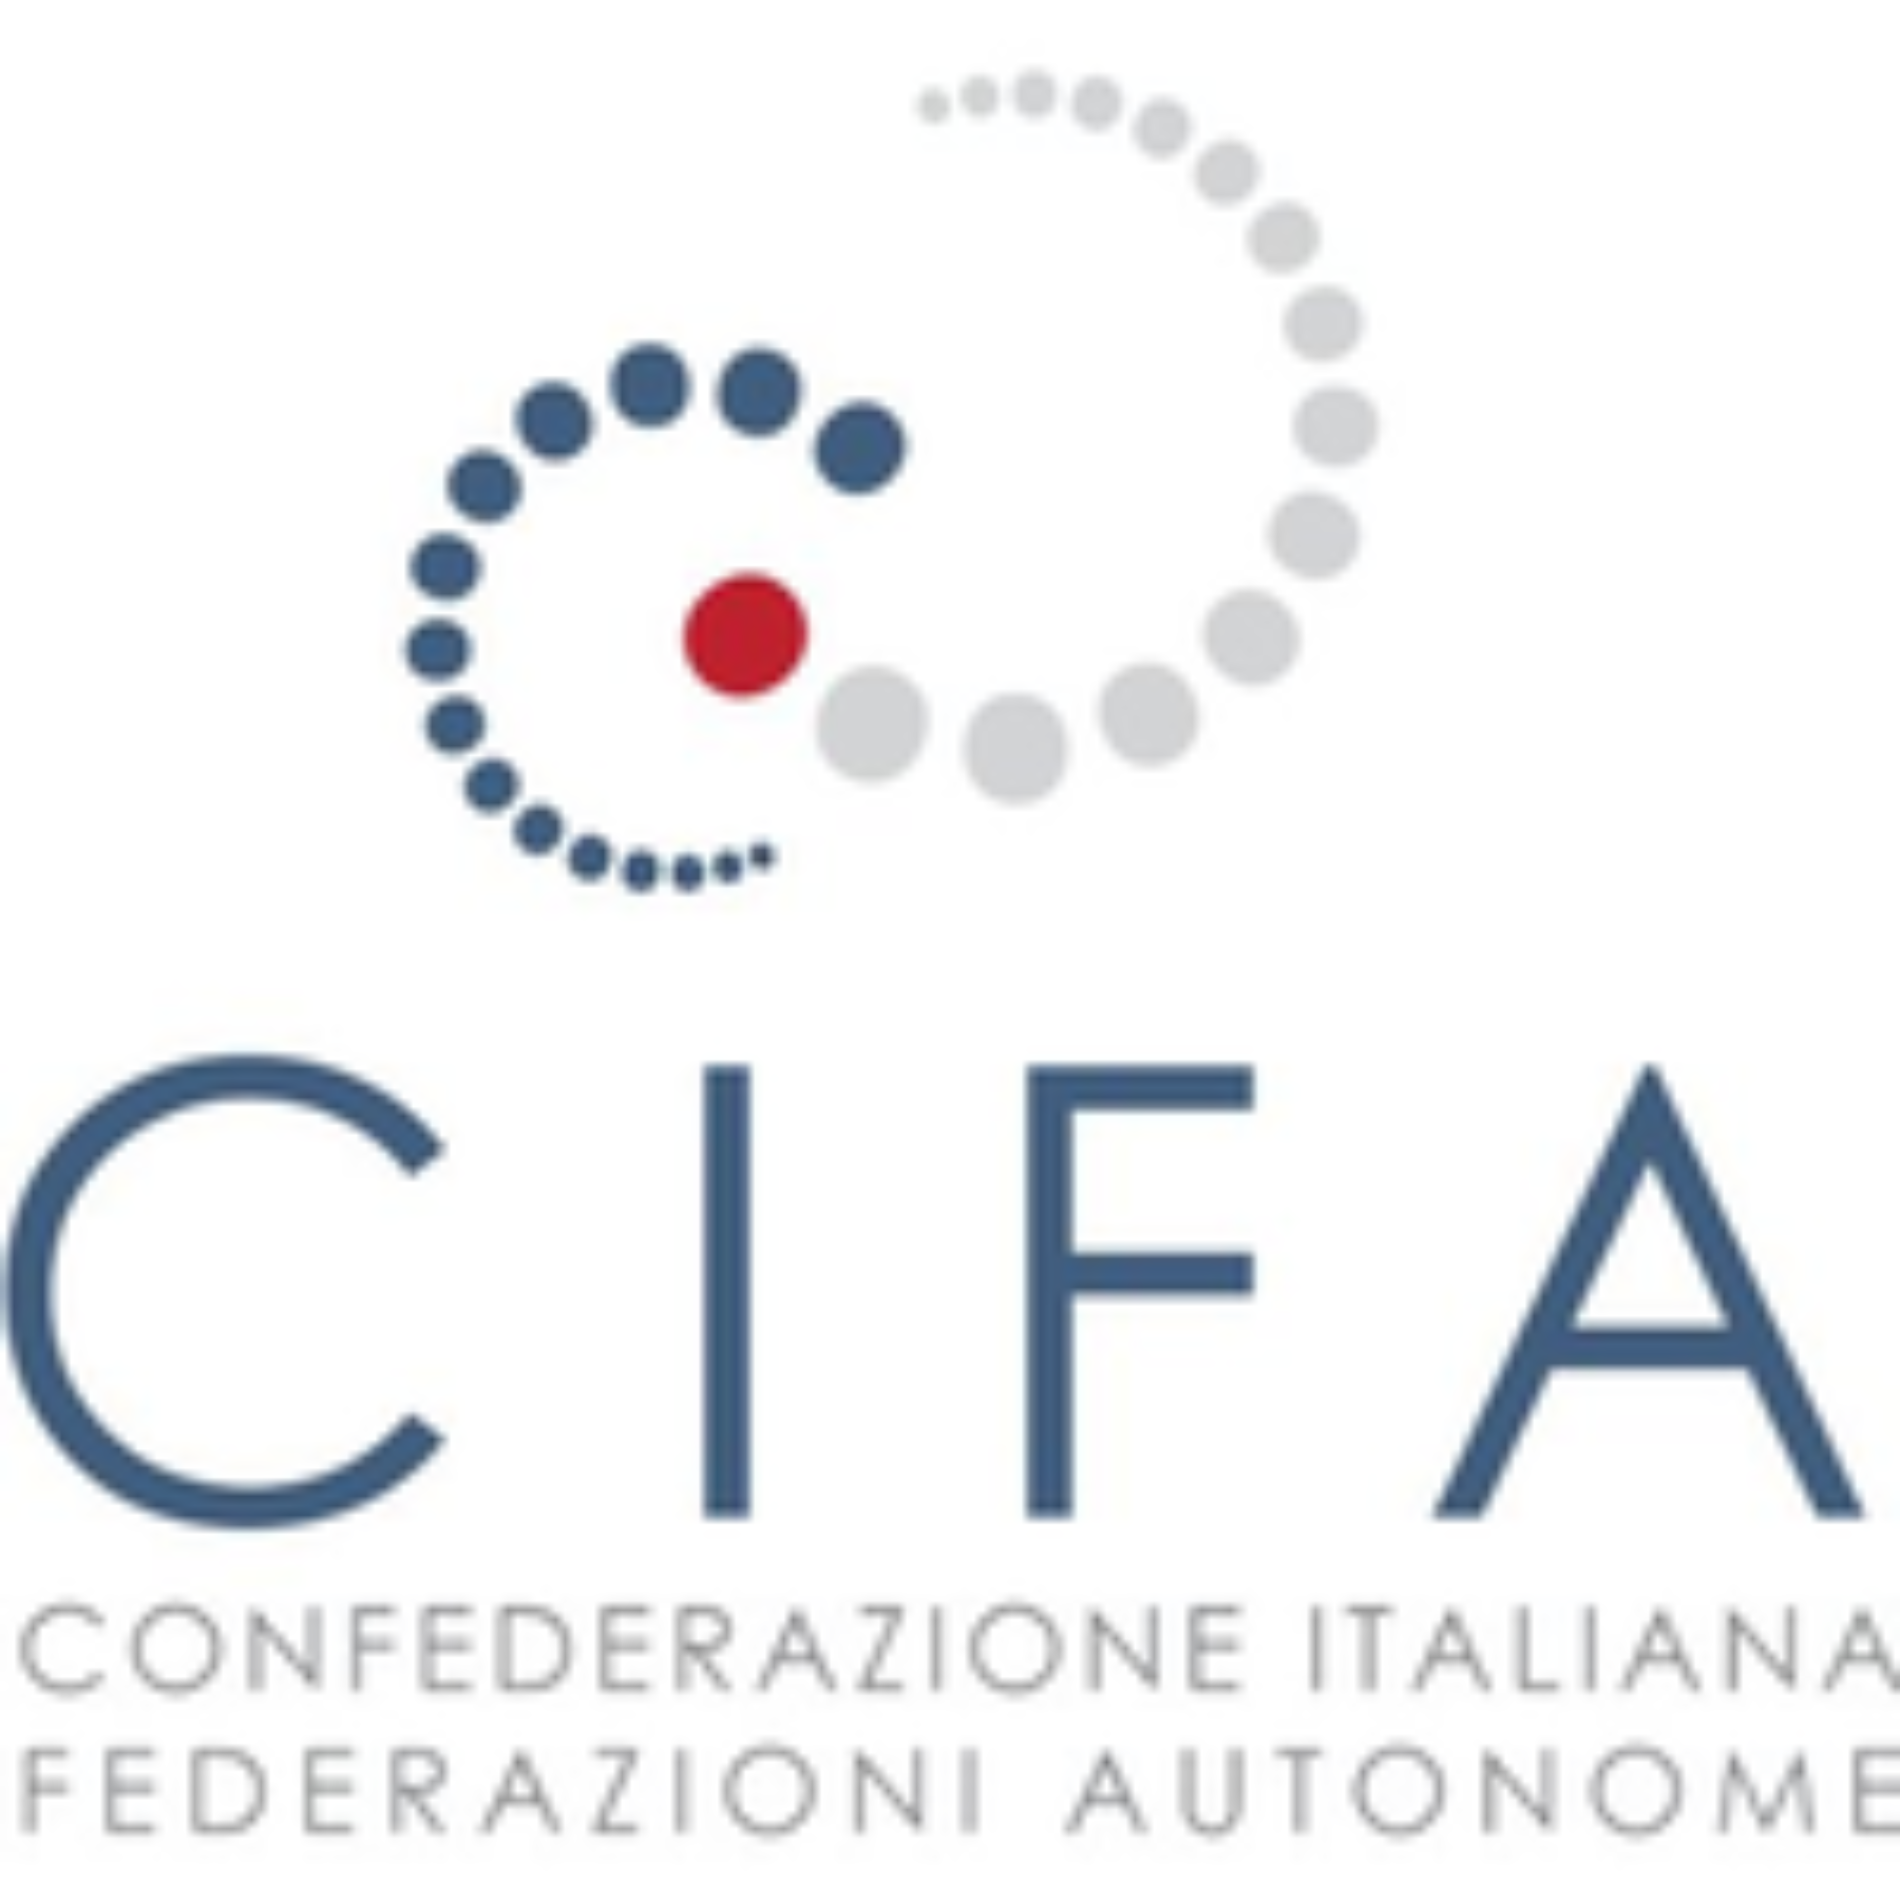 ROMA.  Cifa Italia lancia #ILLAVOROCONTINUA  Ciclo di web seminar gratuiti per sostenere le imprese, i lavoratori e i professionisti